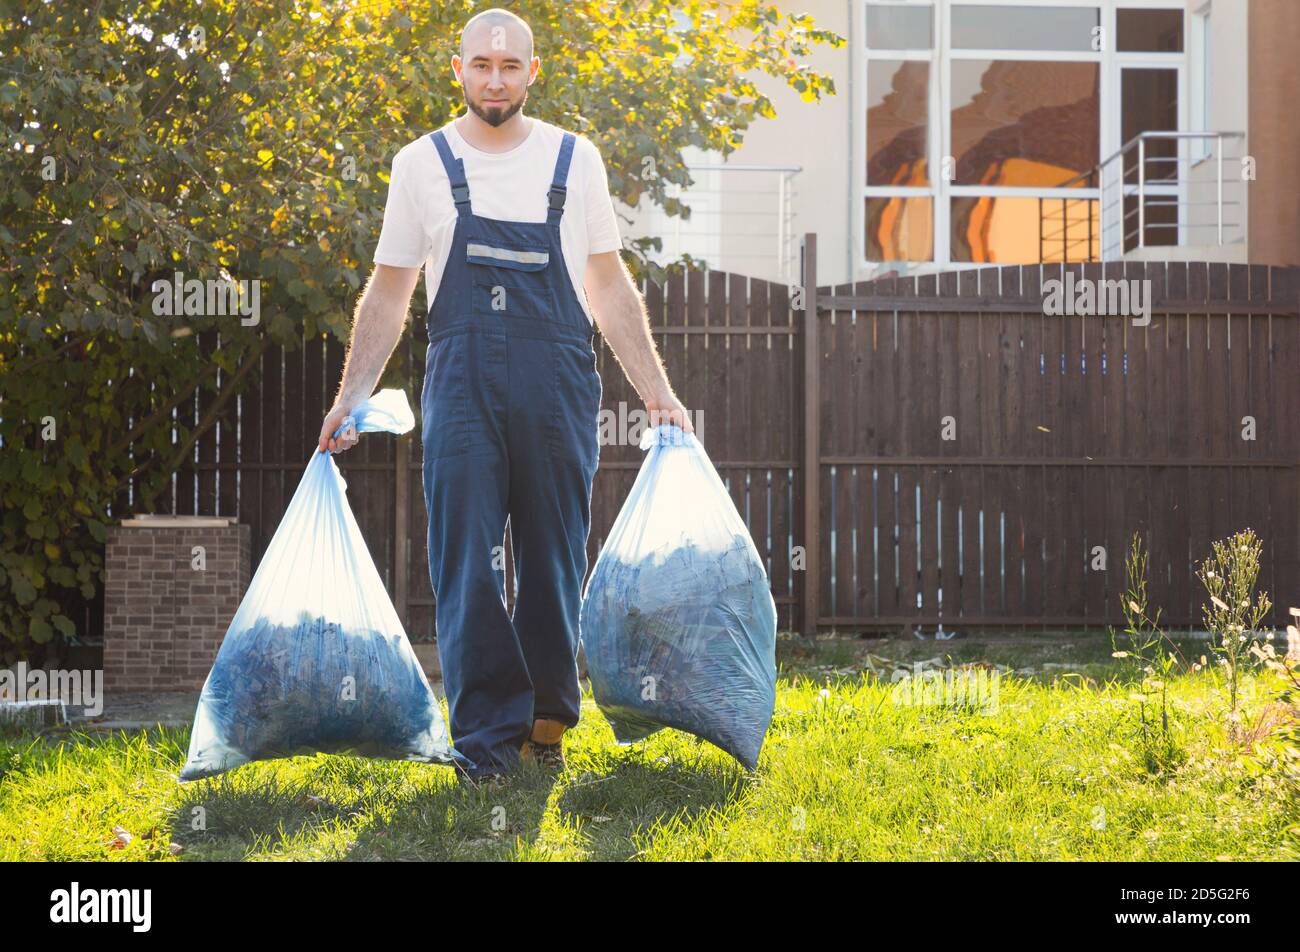 Der Gärtner lächelt und entfernt die Beutel mit Kompost. Blaue Uniform. Stockfoto